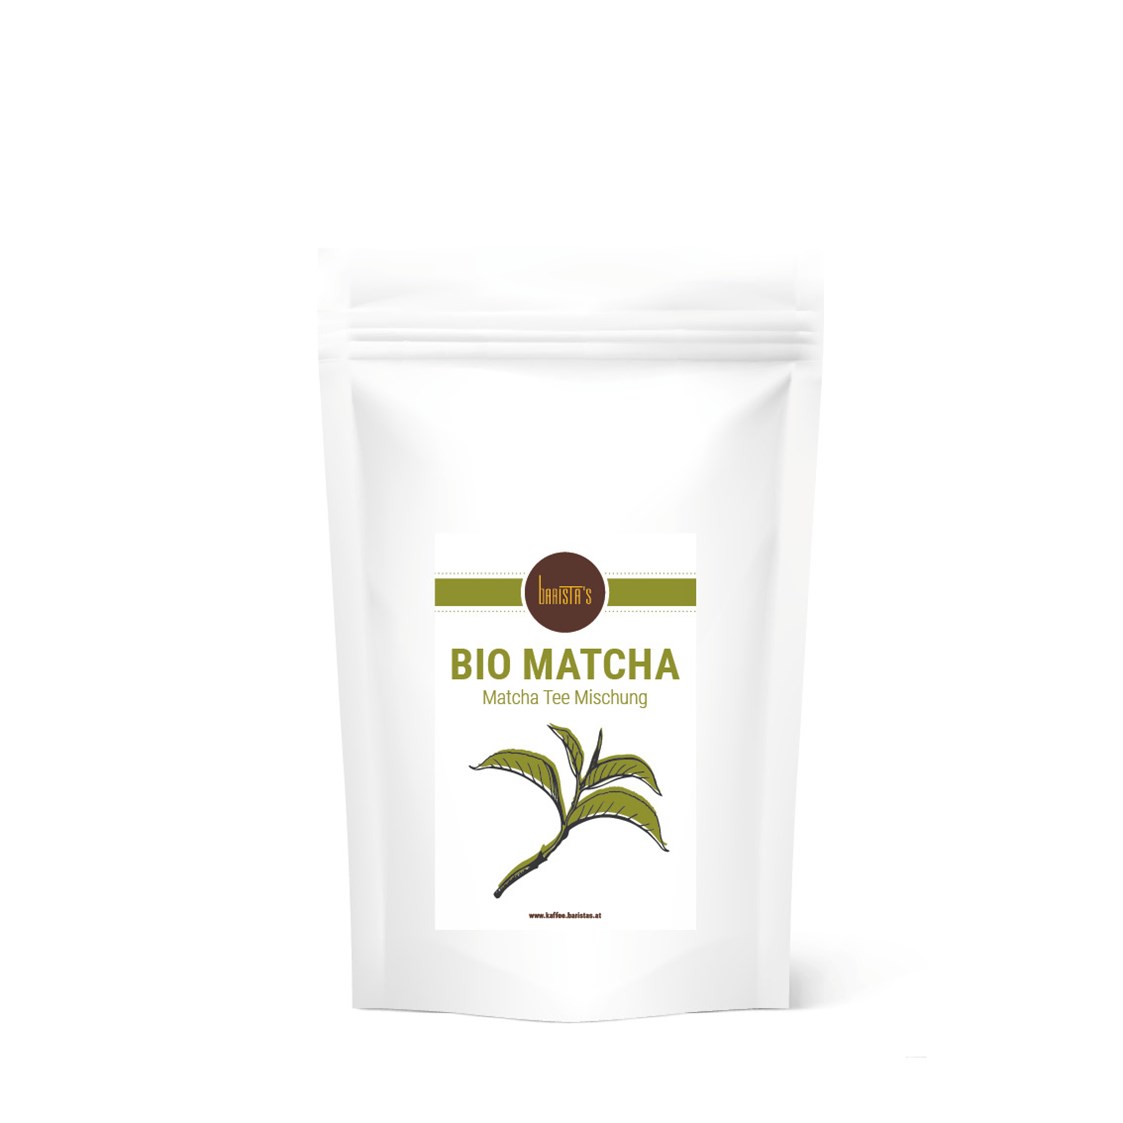 Direktvermarkter: Unser Bio Matcha Latte Mix lässt sich herrlich einfach, die köstlichsten Variationen dieses Getränks auch zu Hause herstellen.

2 Kaffeelöffel mit 0,3l einer heißen Milch Deiner Wahl aufgießen, umrühren und fertig. Schmeckt auch großartig als Kaltgetränk oder pepp einfach Deinen Smoothie mit etwas grüner Power auf. - Barista’s Kaffee 